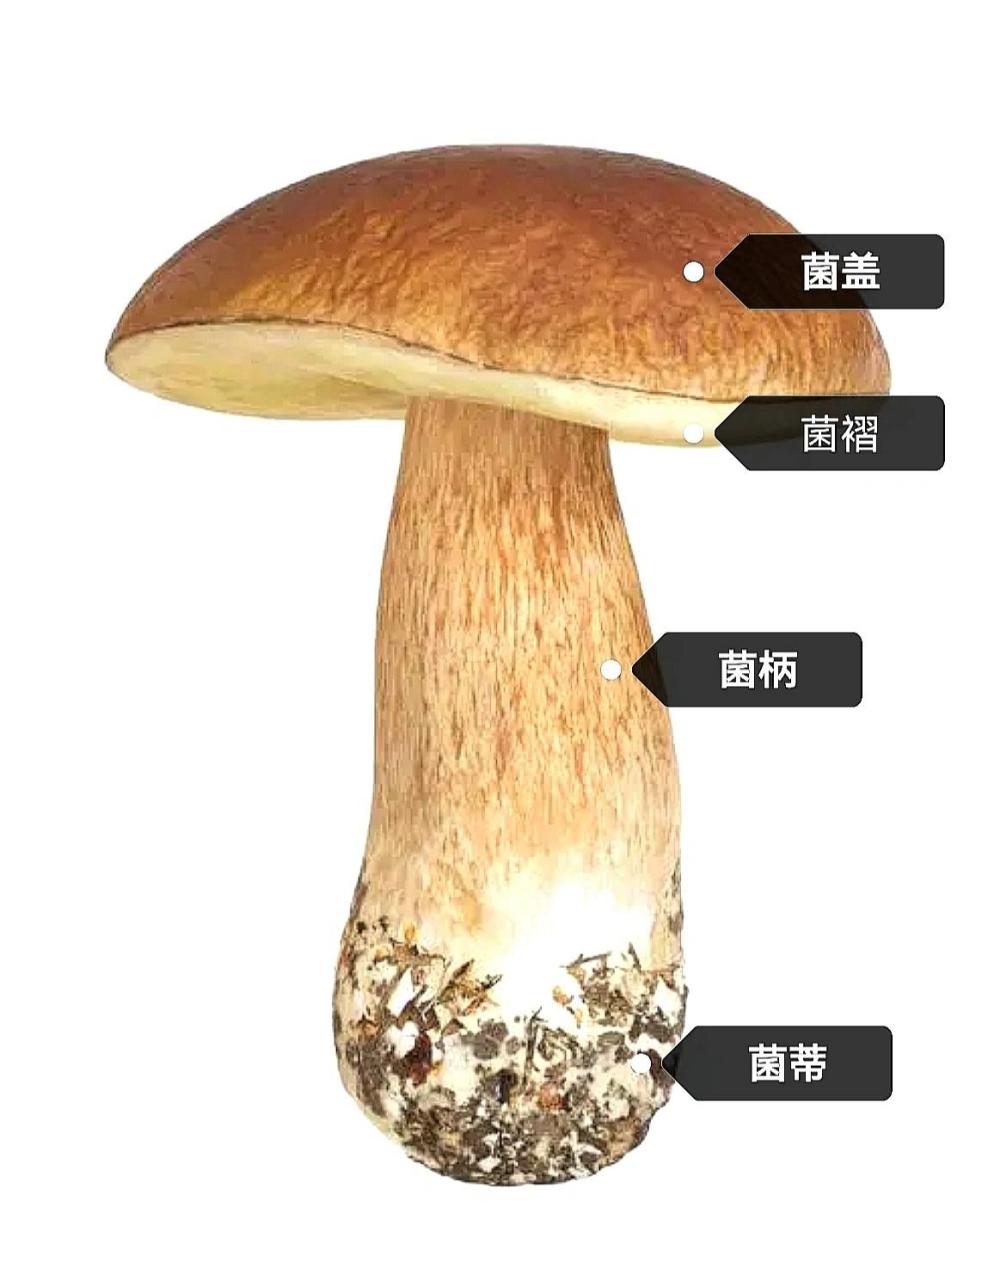 蘑菇的部位名称及图片图片